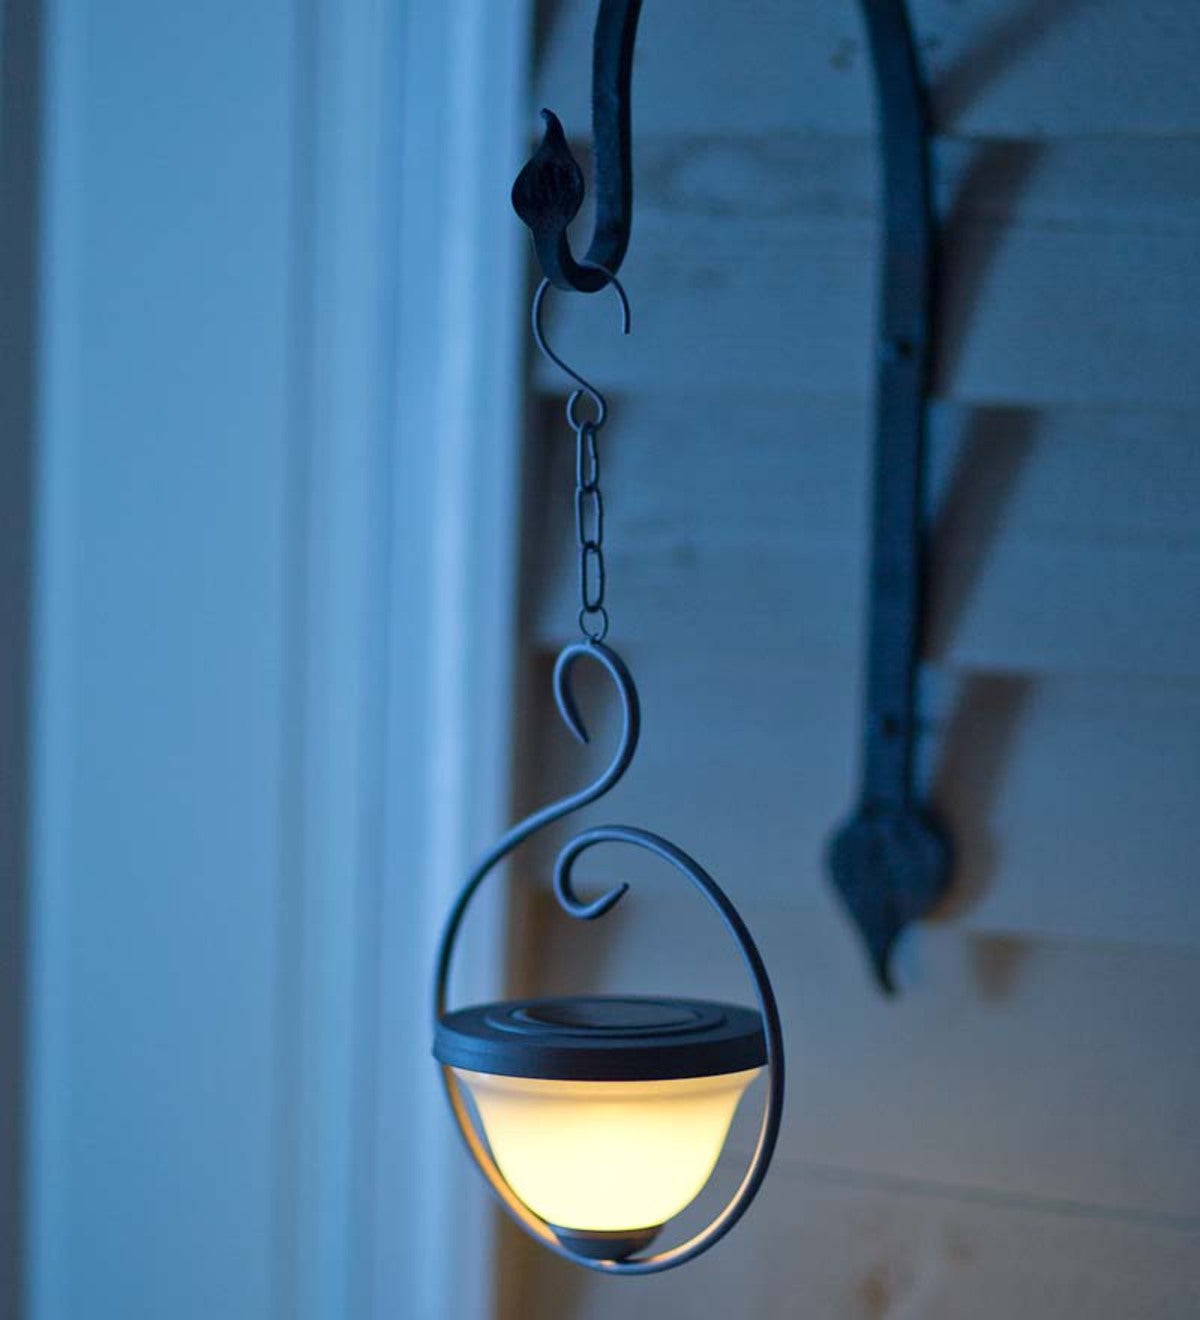 Solar Hanging Lantern With Circular Design